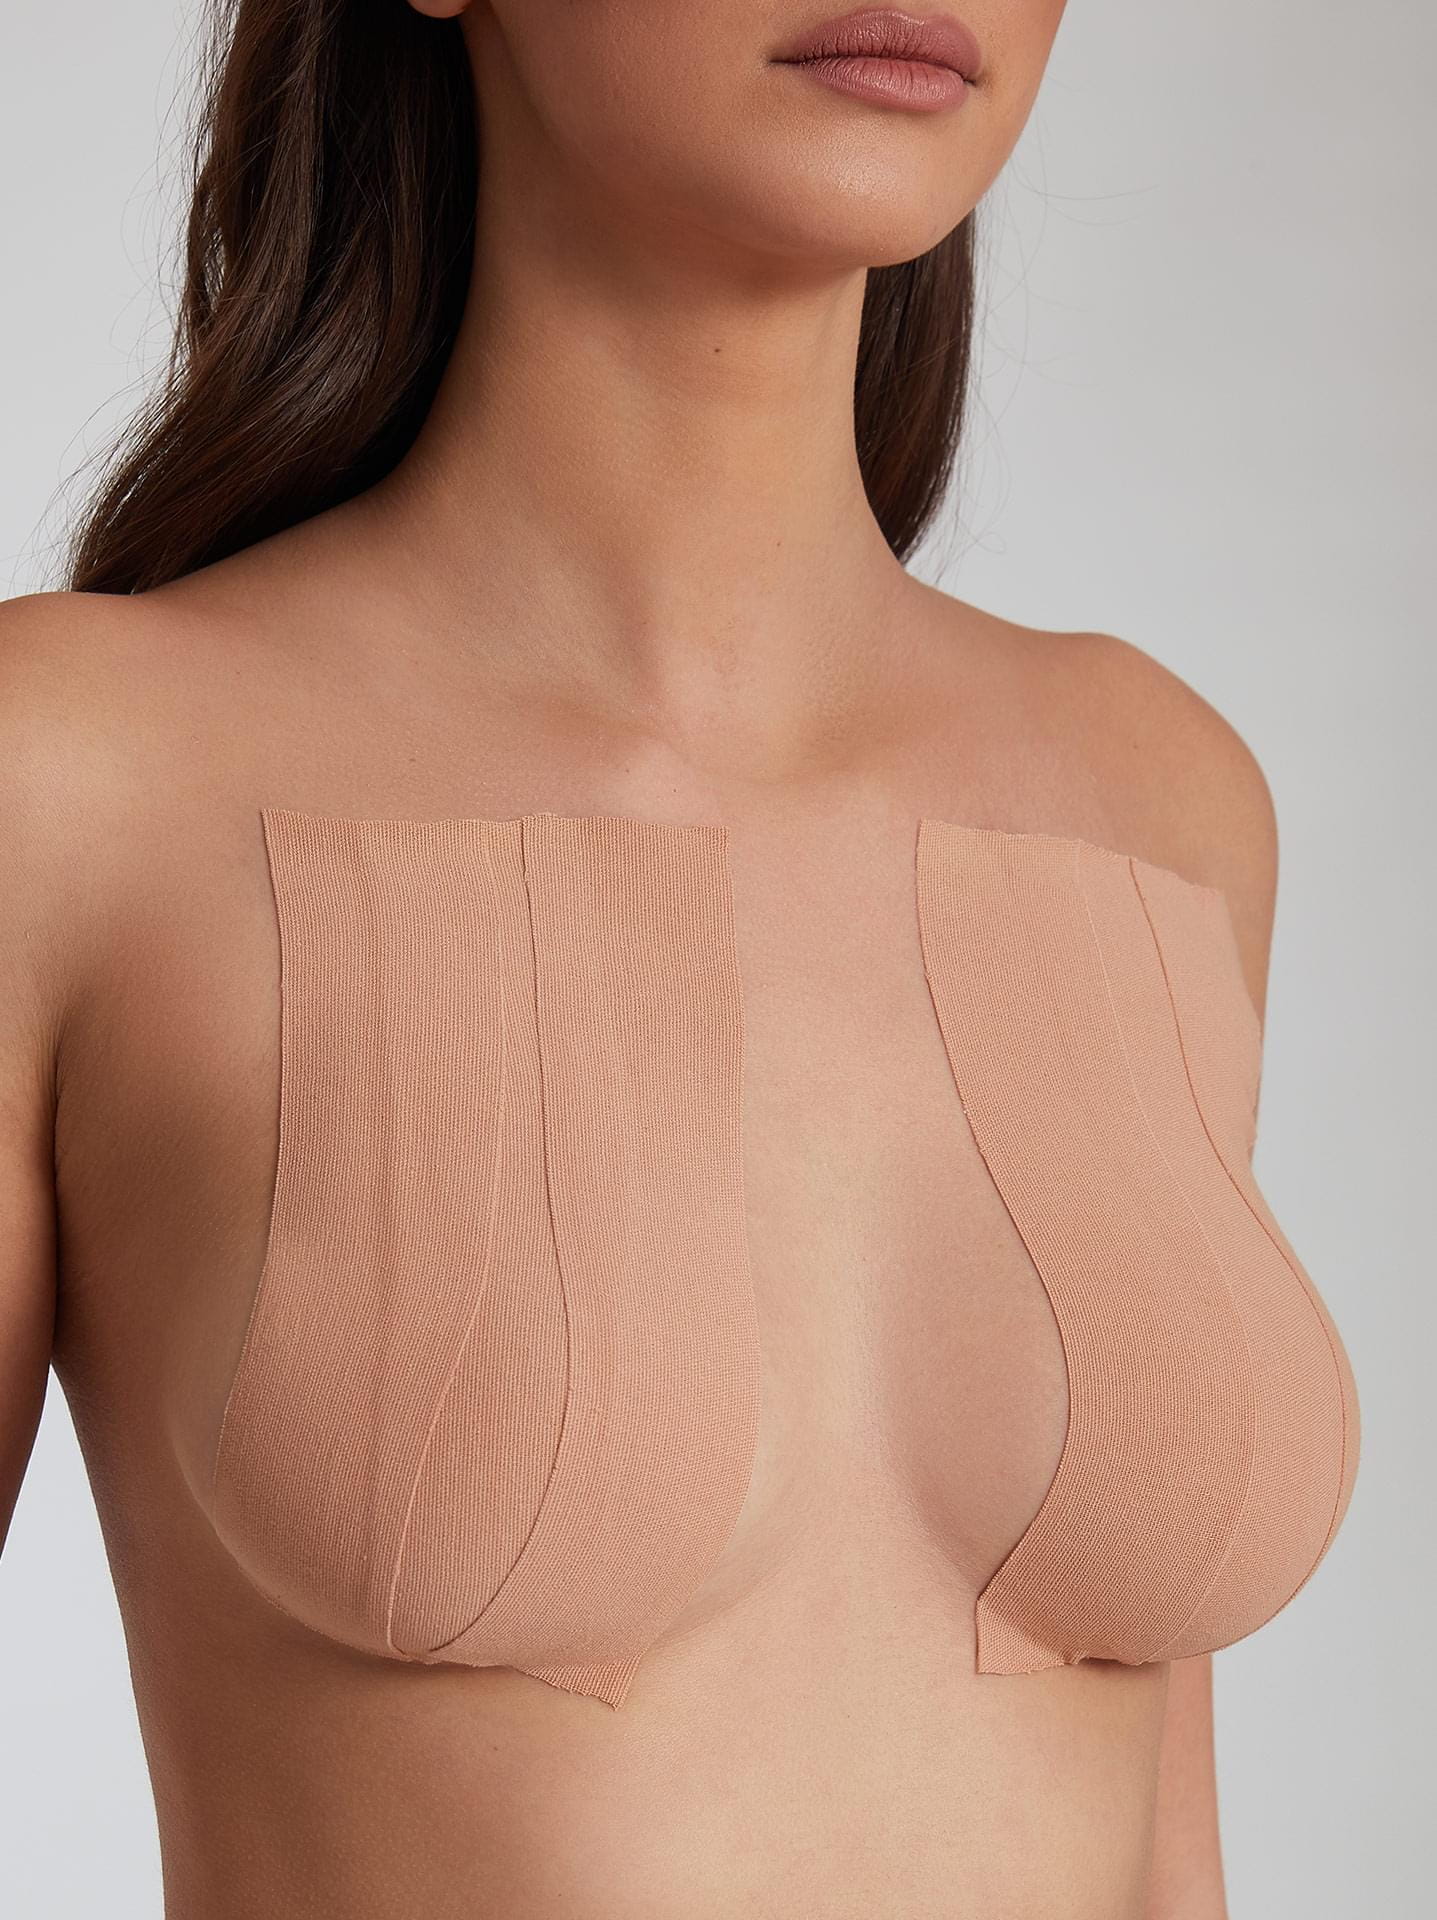 Breast lift tape in beige, 4.99€